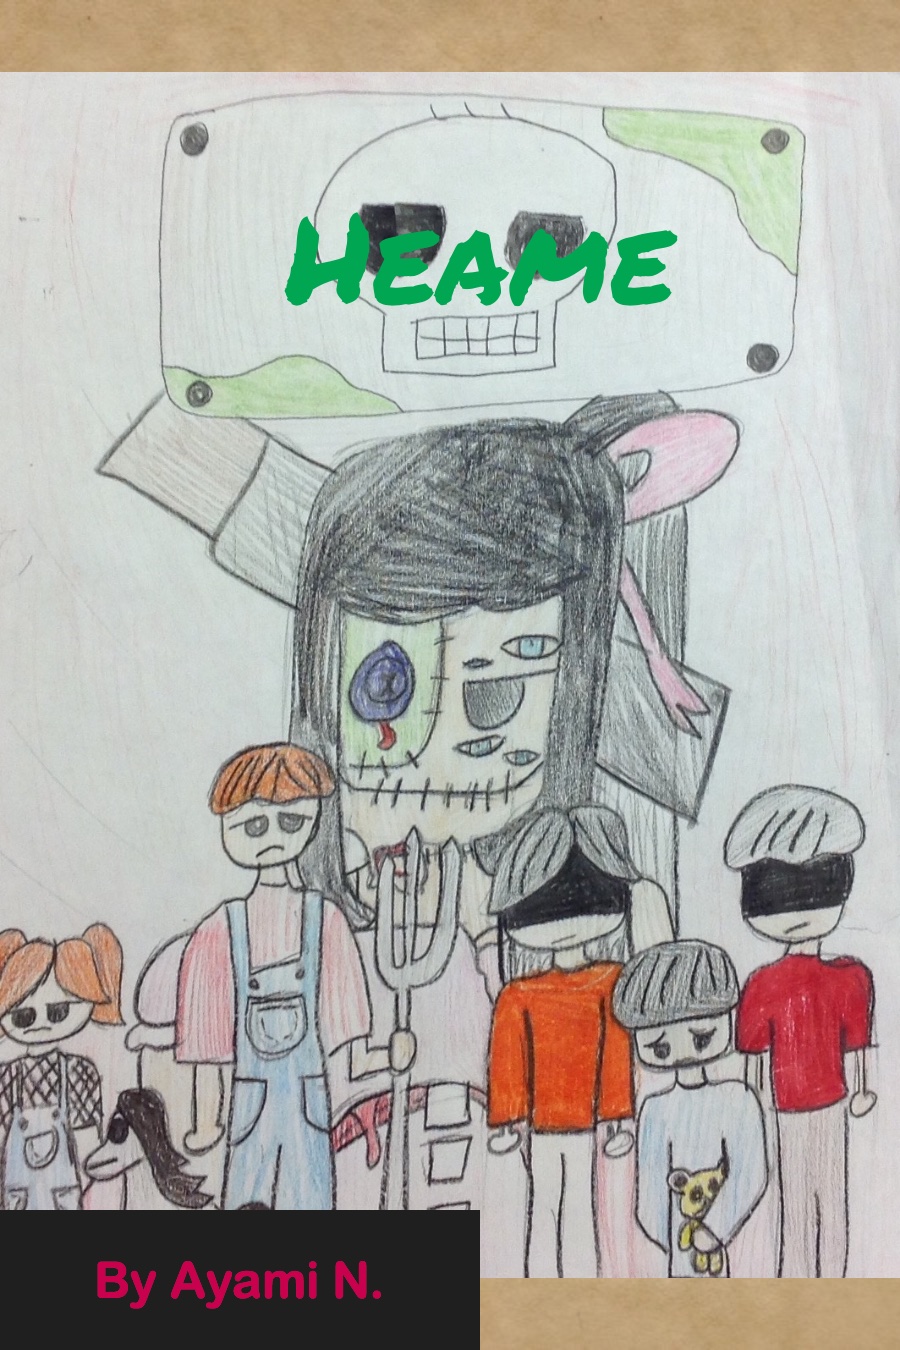 Heame by Ayami N